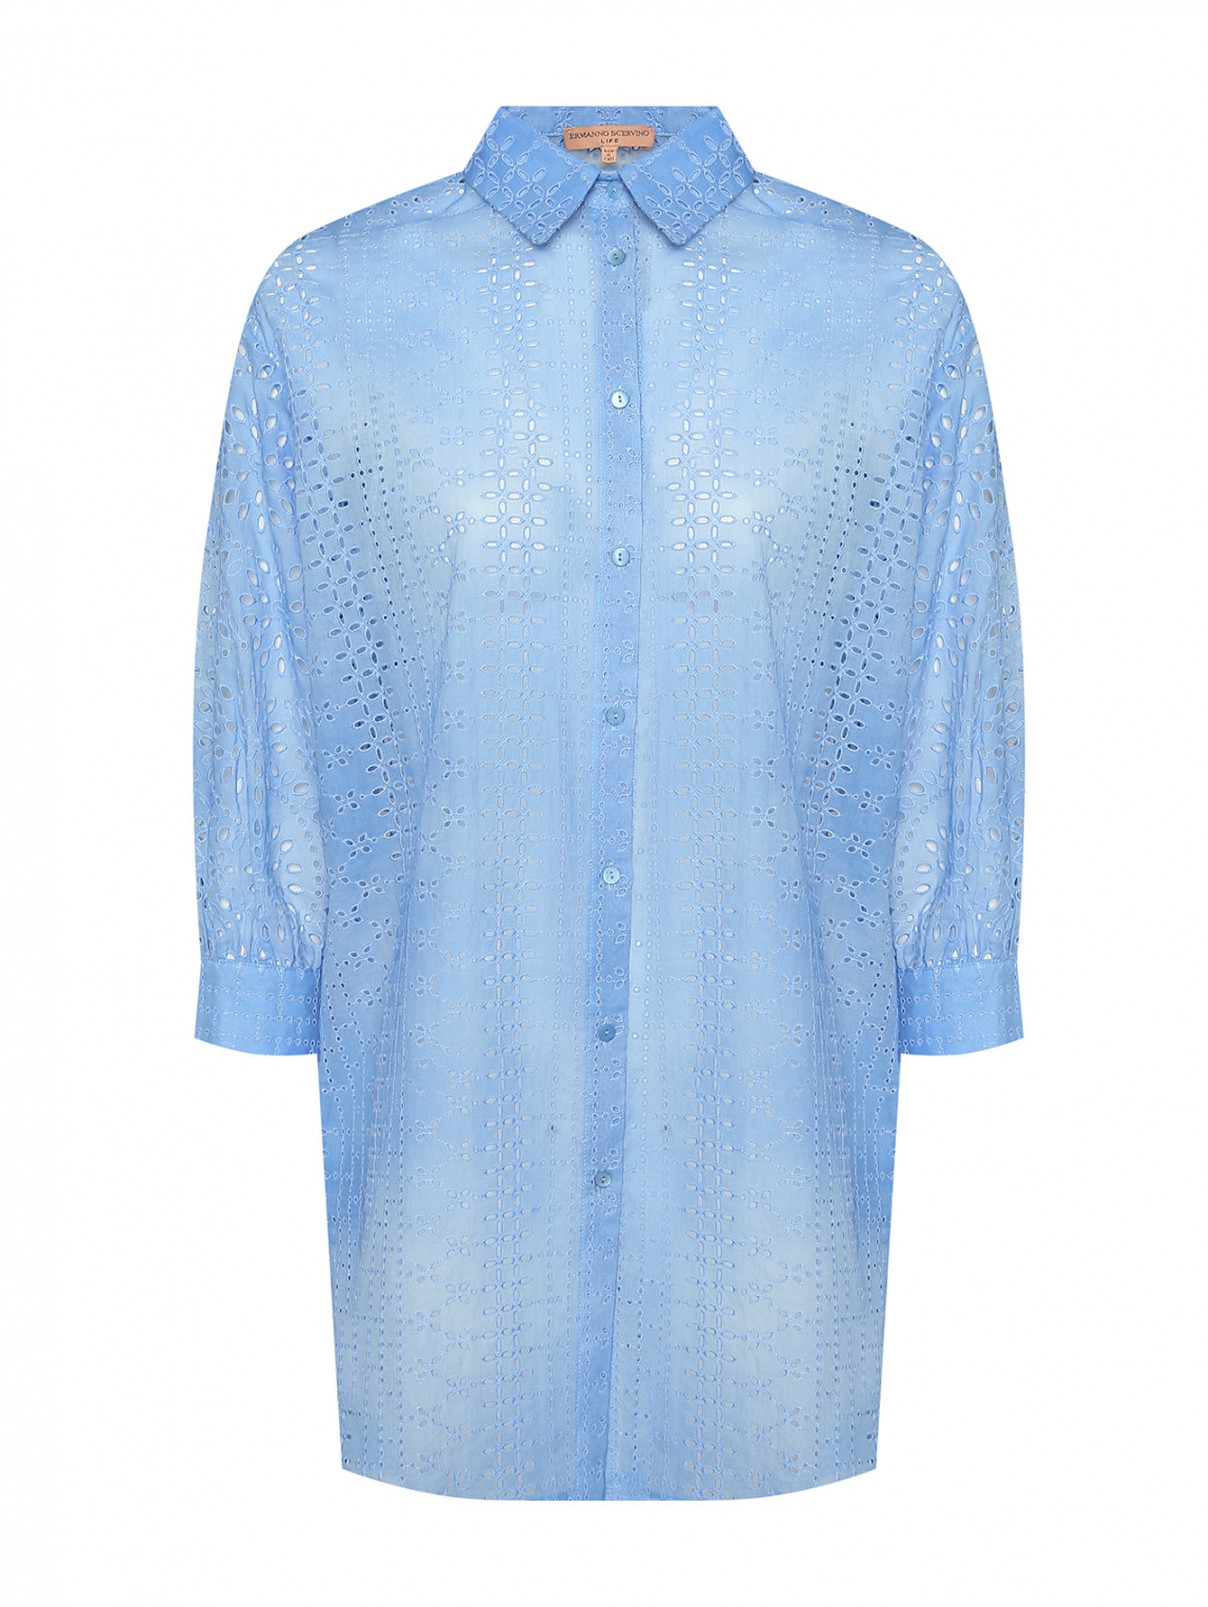 Блуза свободного кроя из хлопка с вышивкой ришелье Ermanno Scervino  –  Общий вид  – Цвет:  Синий